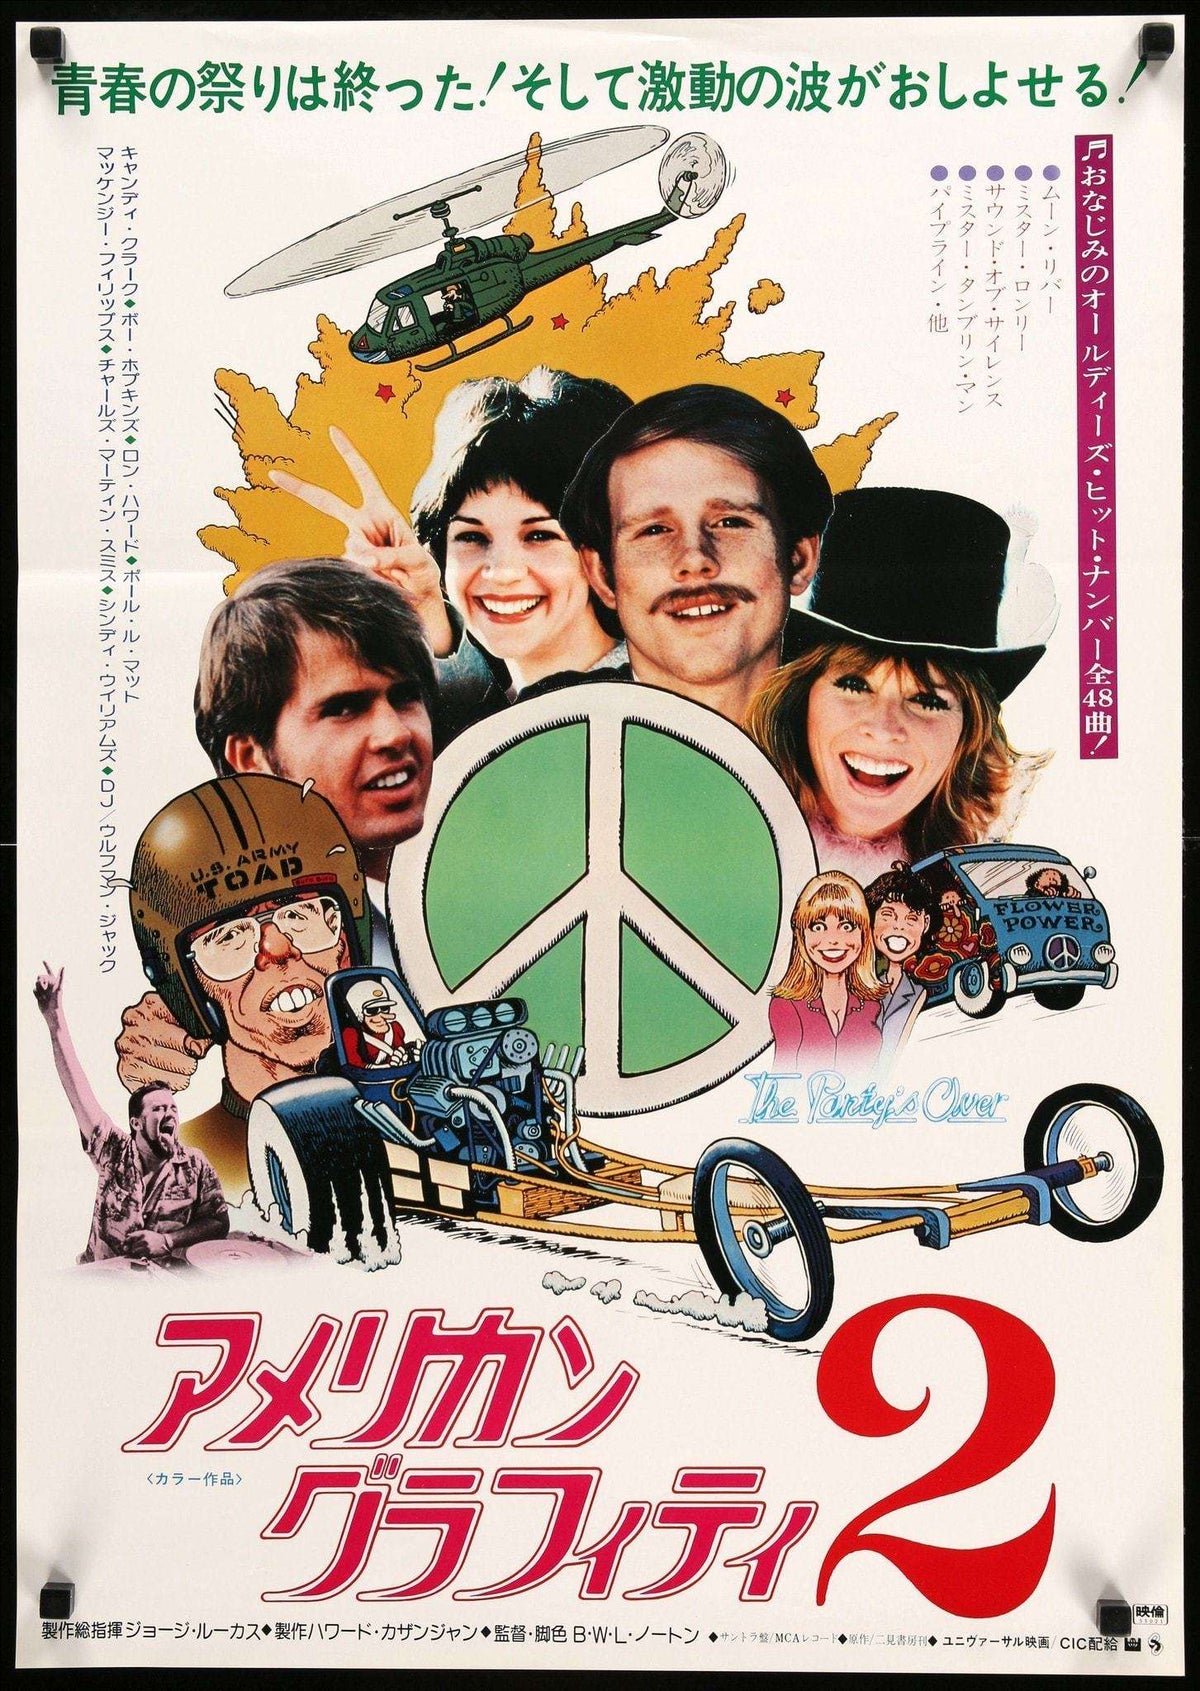 More American Graffiti (1979) original movie poster for sale at Original Film Art